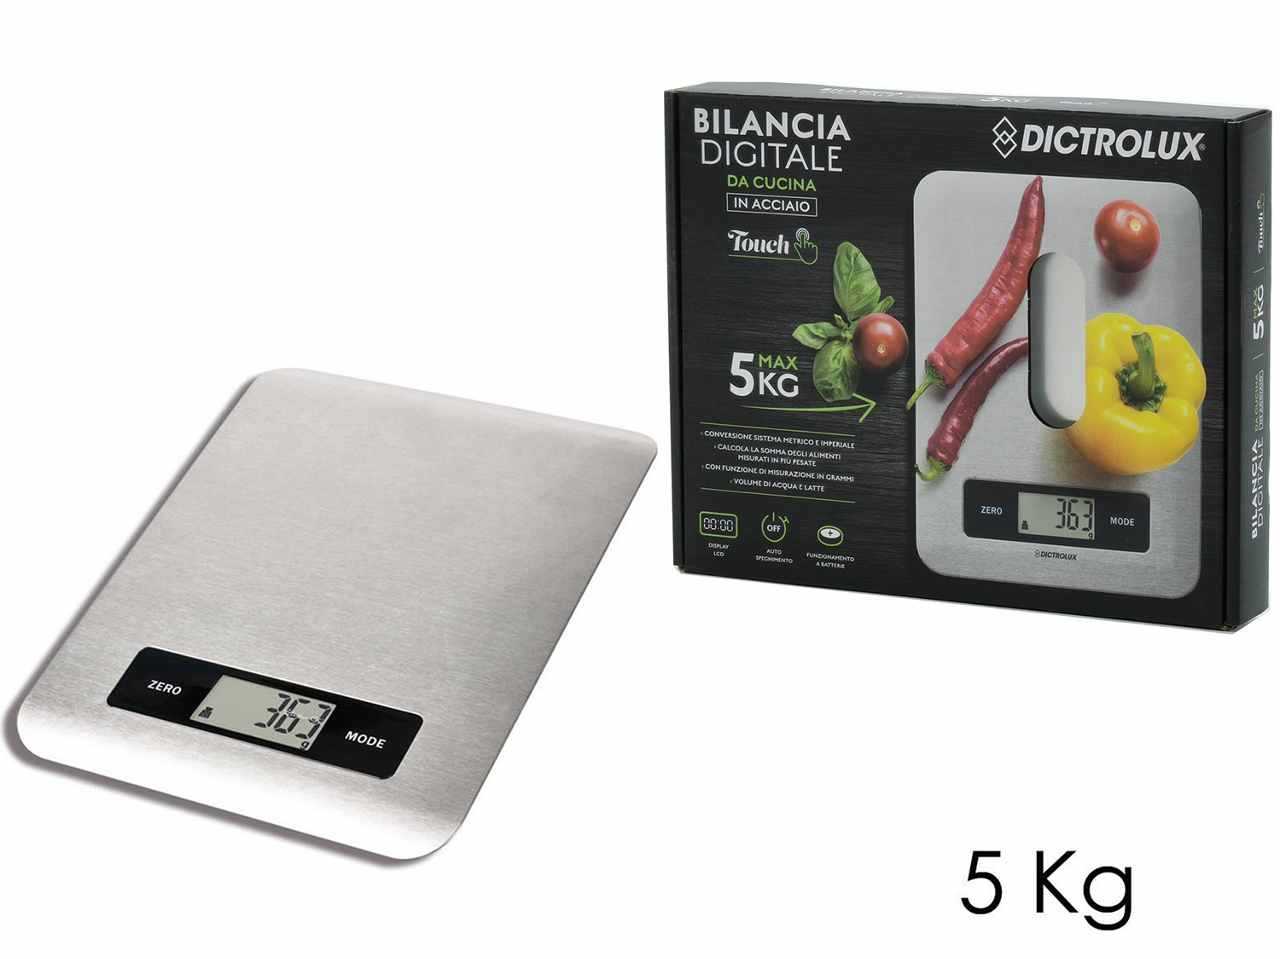 Proster Bilancia Cucina Digitale Ricaricabile 3g-10kg Bilancia da